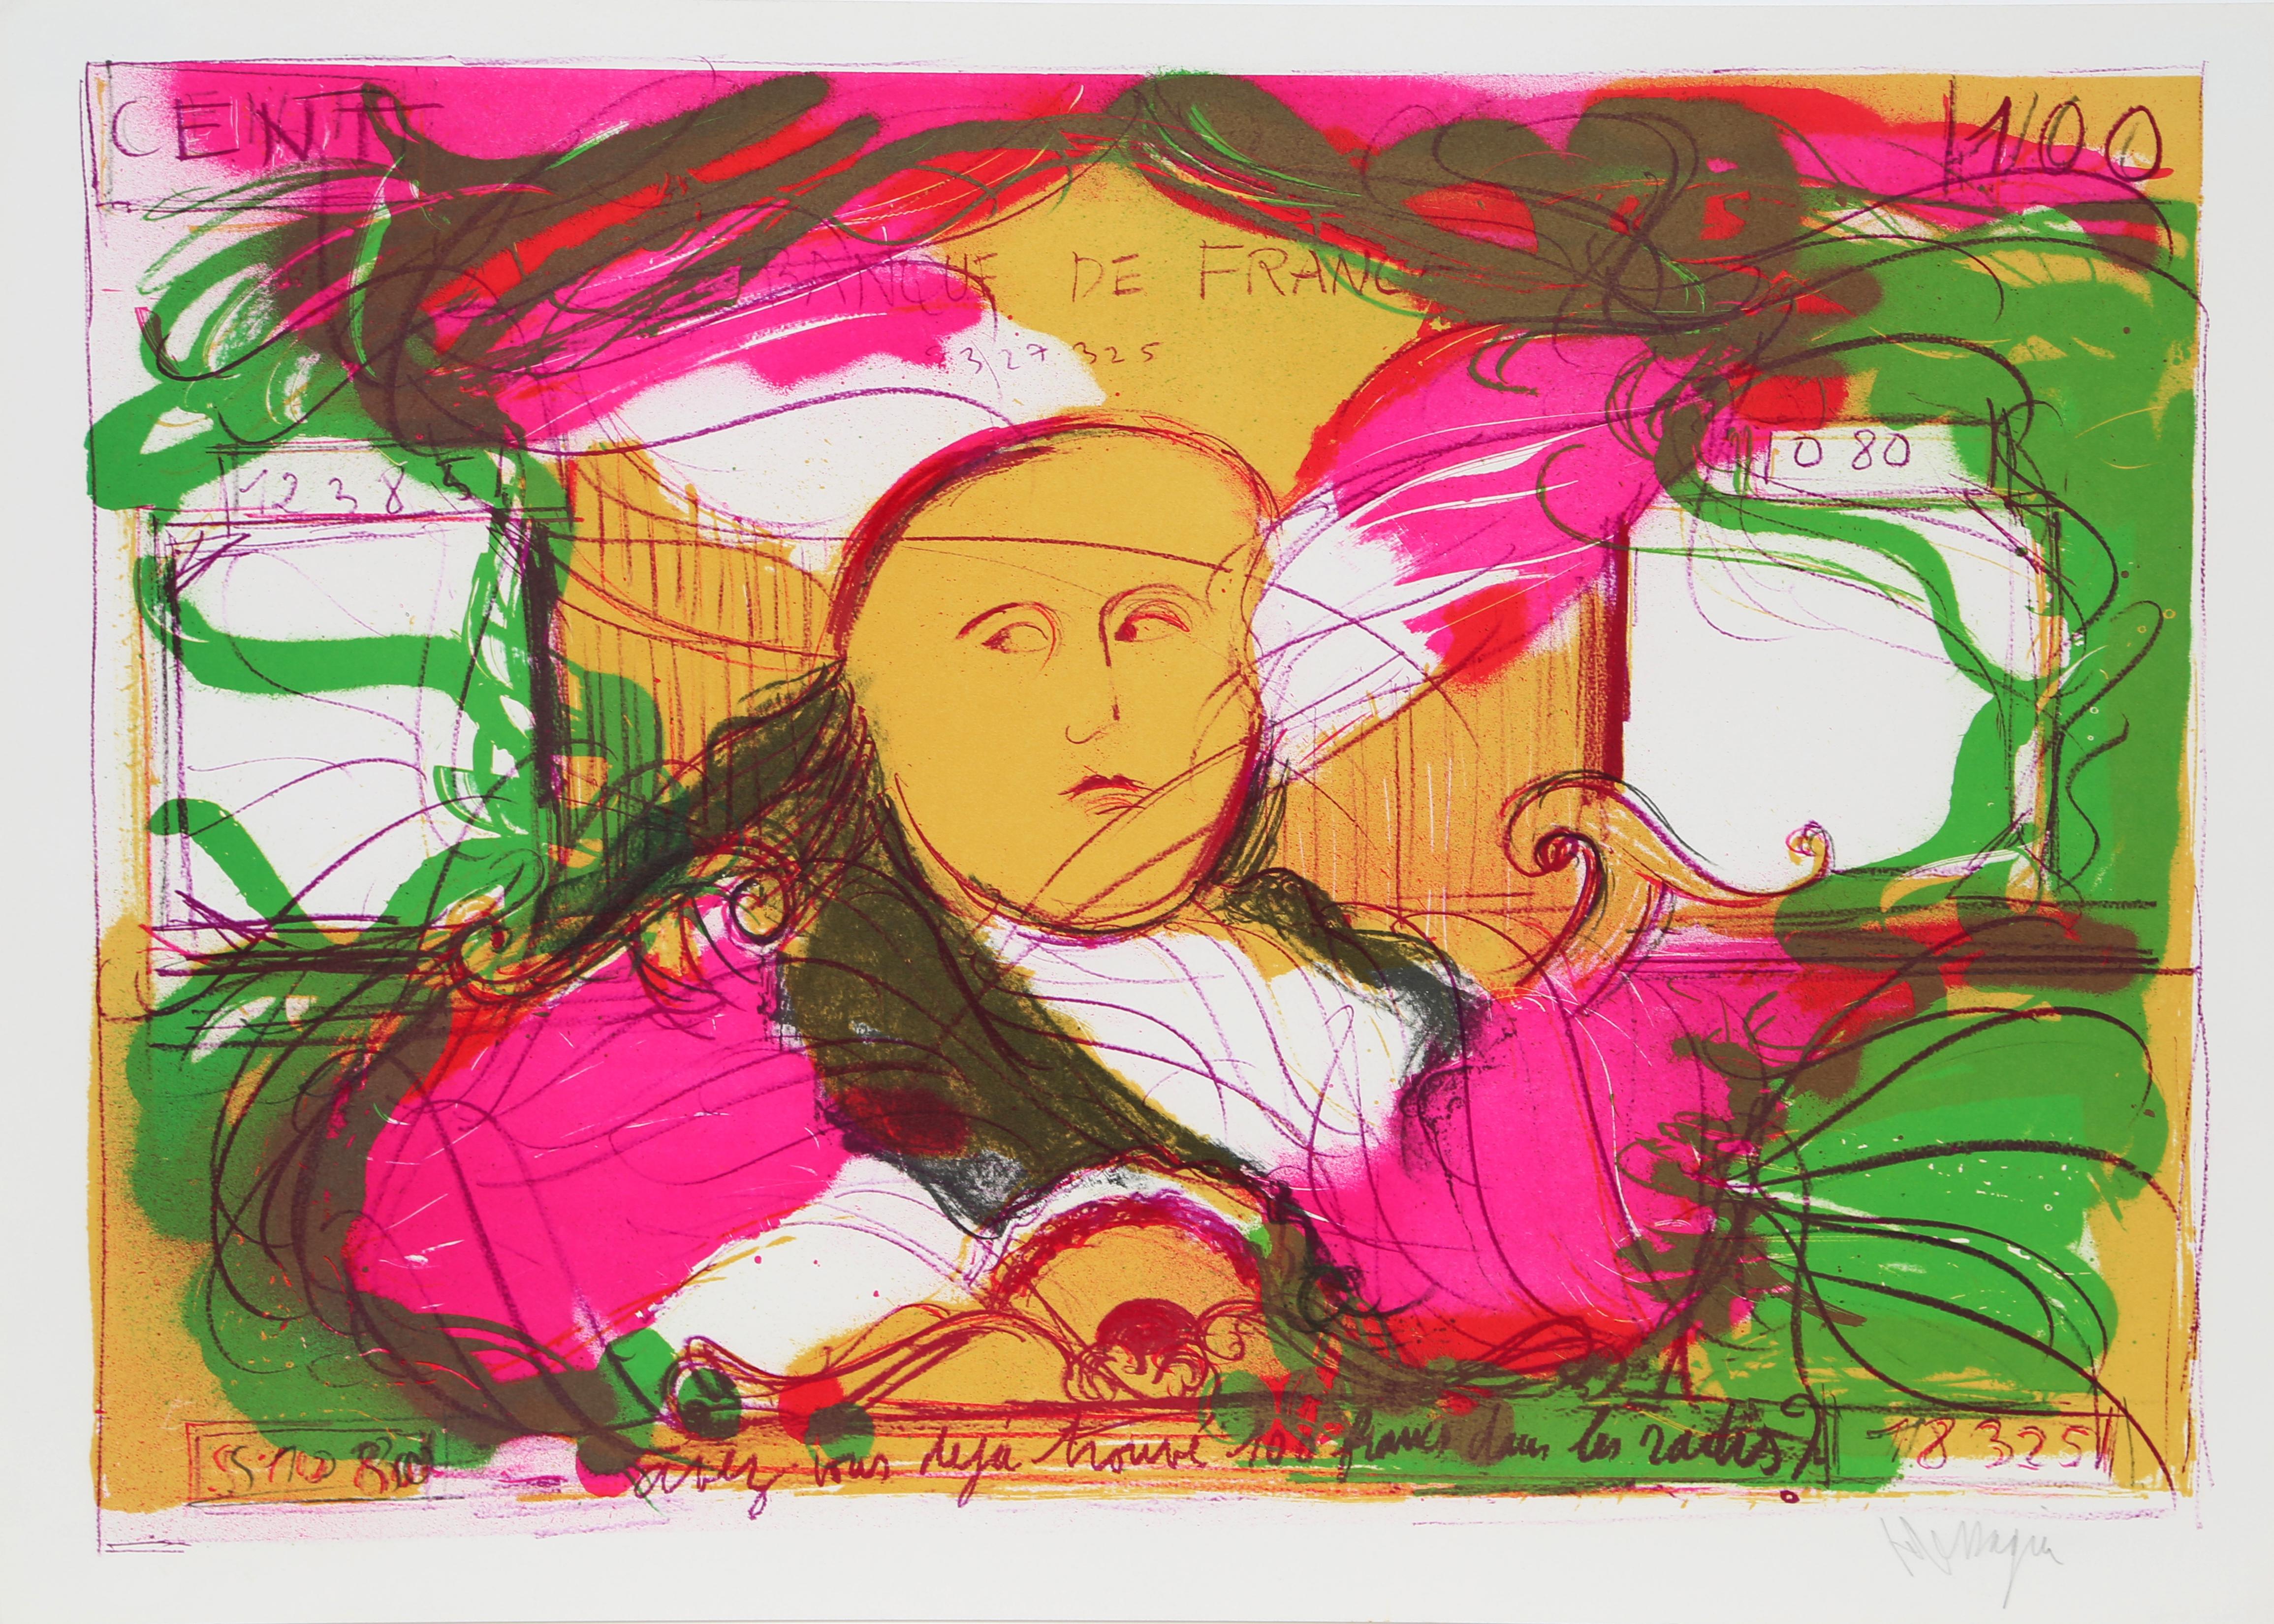 Abstract Print Jean Messagier - 100 francs dans les radis